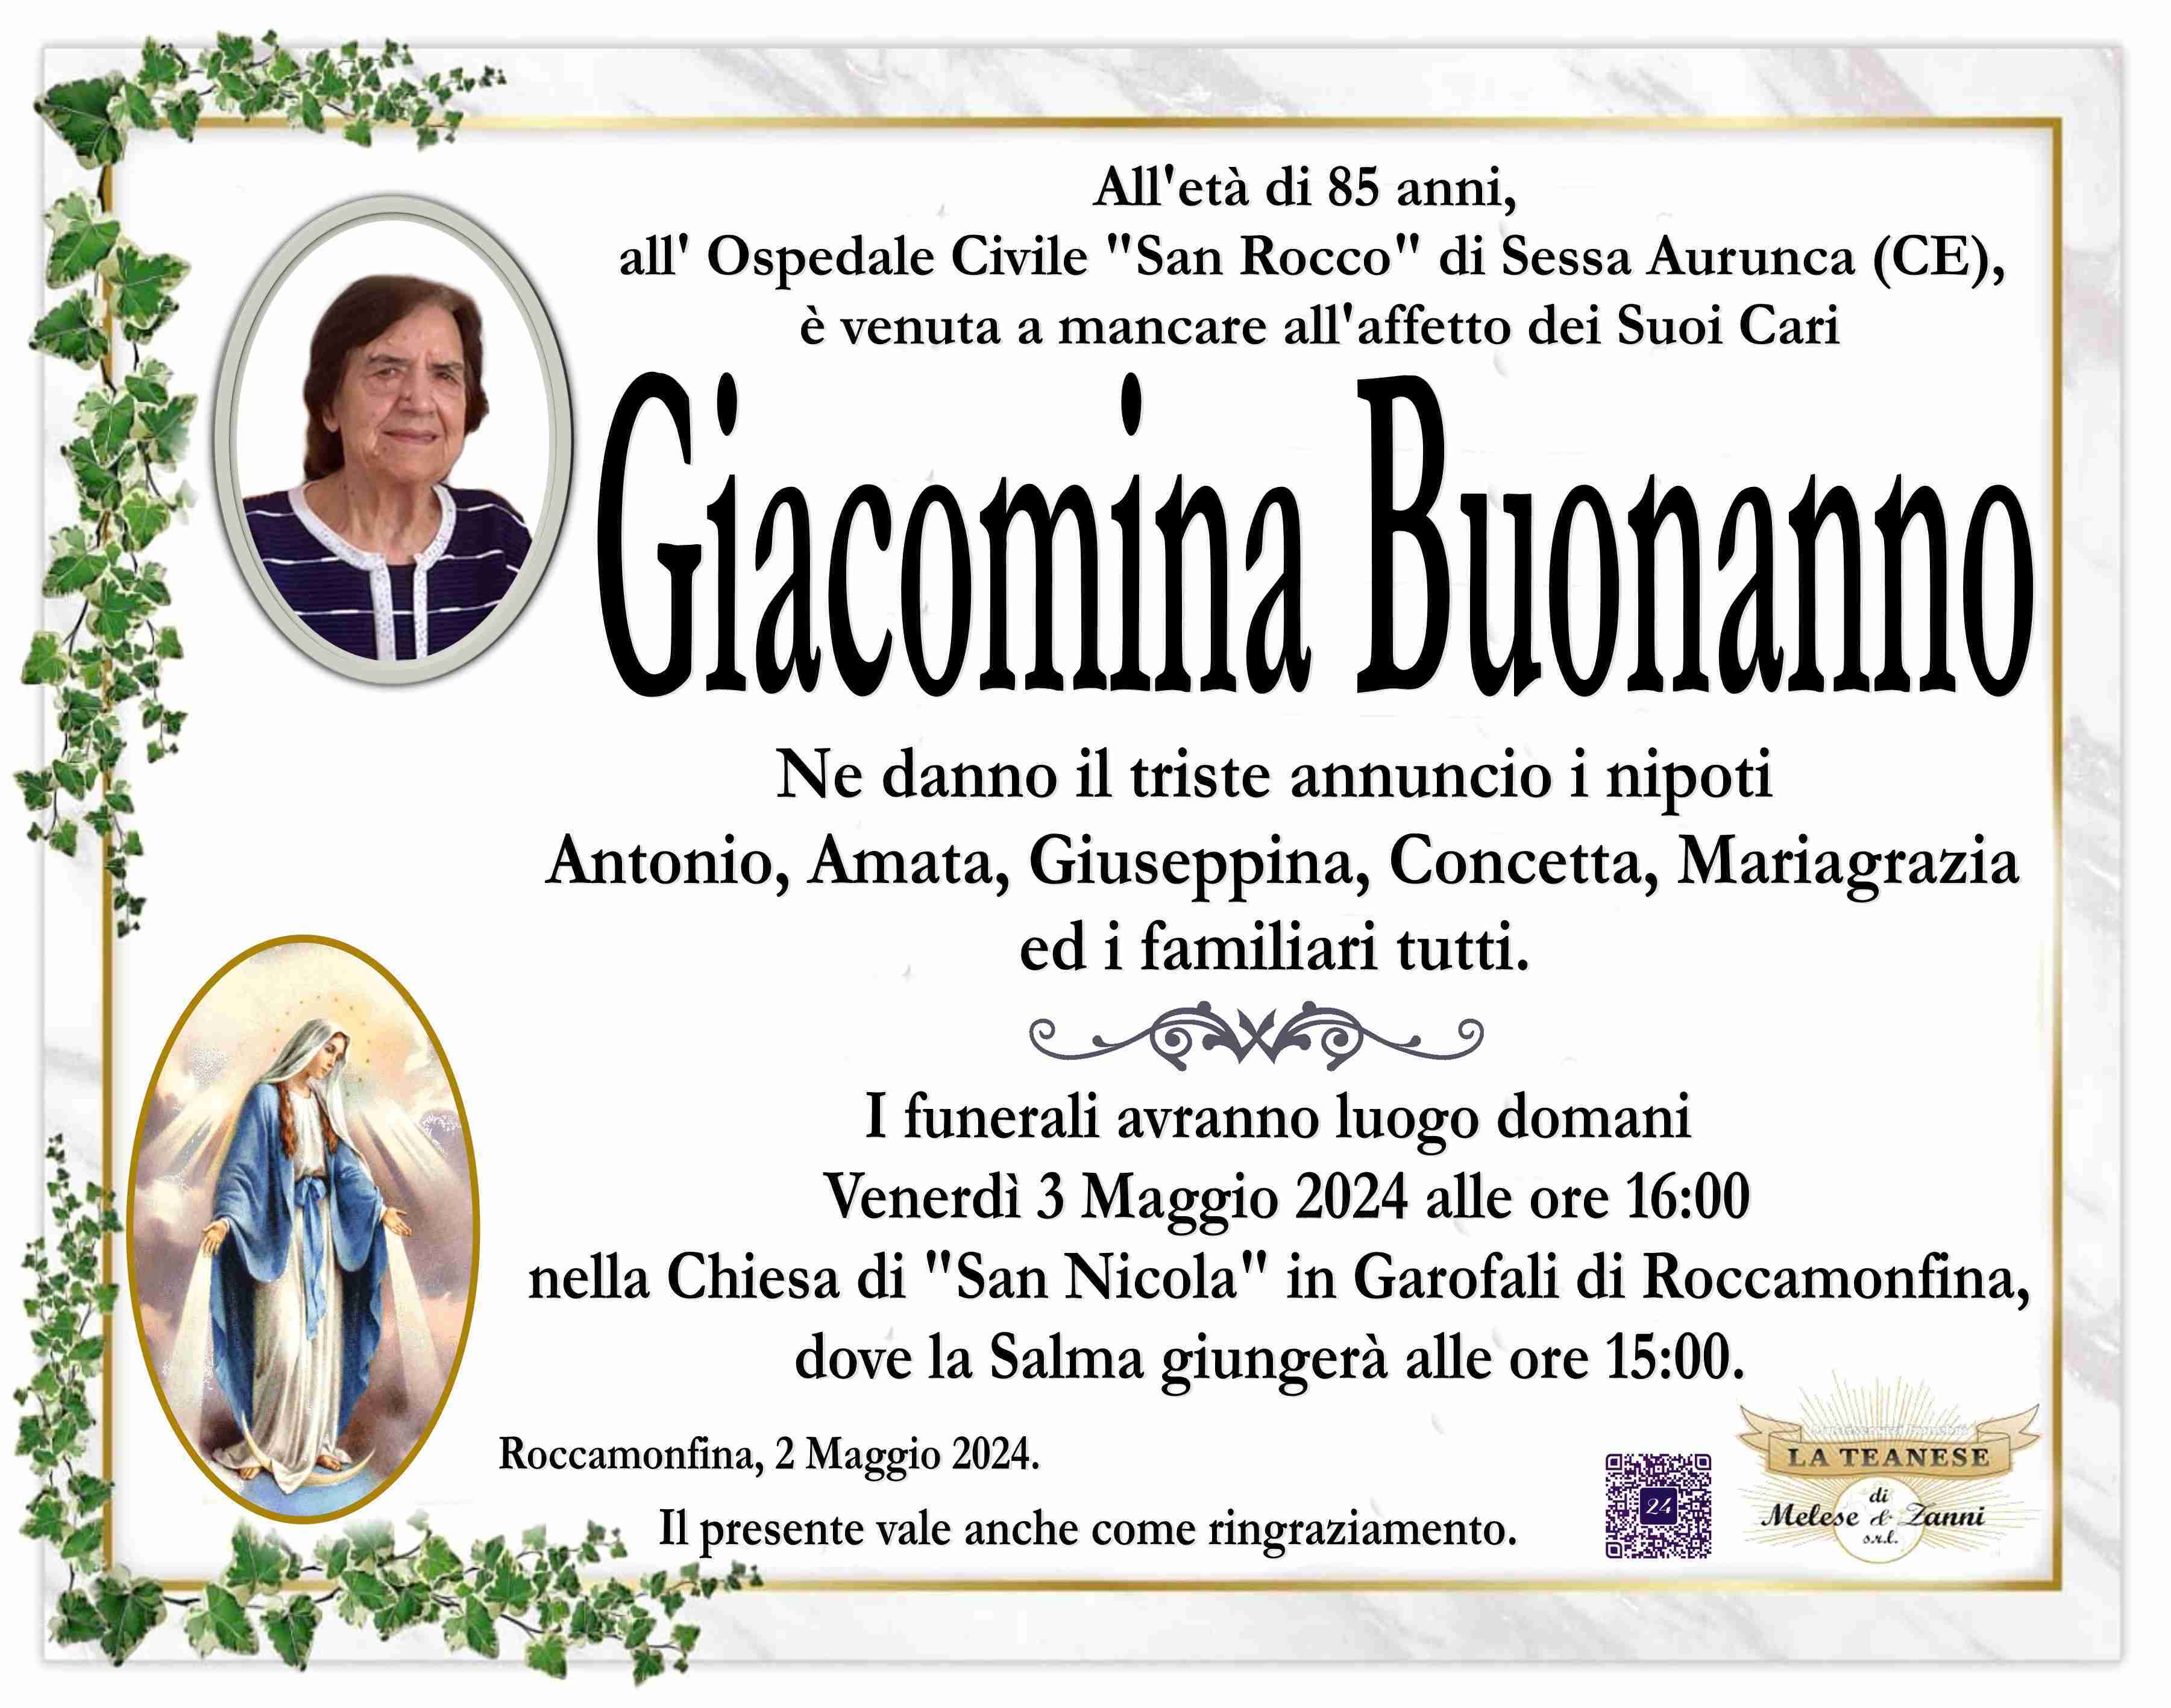 Giacomina Buonanno